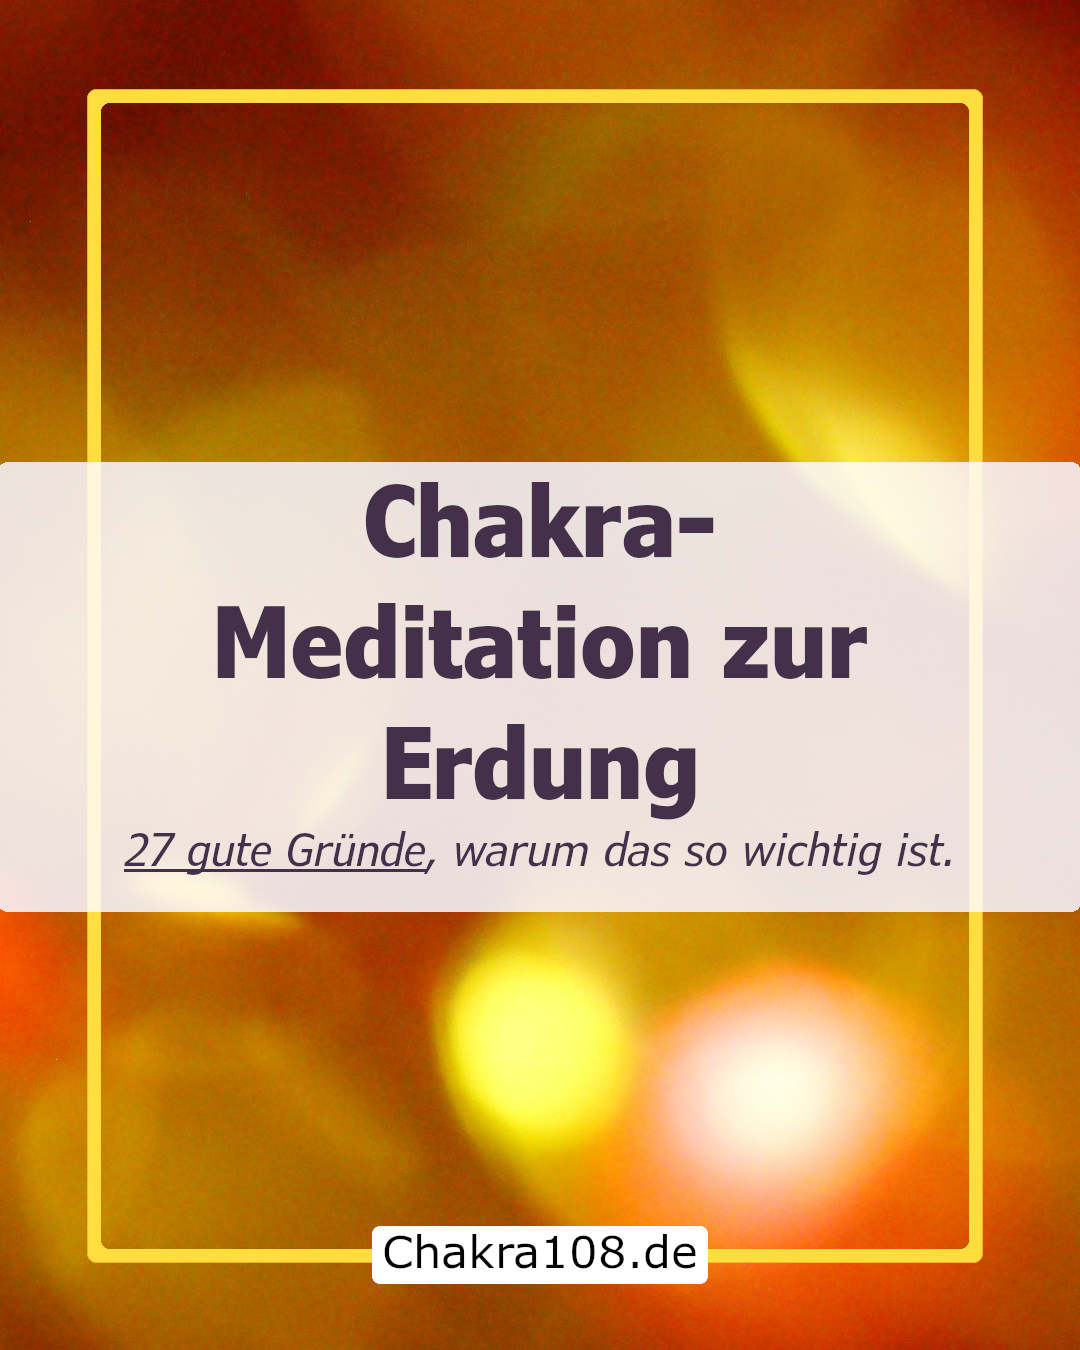 Chakra-Meditation zur Erdung: 27 Lebenssituationen, in denen deine innere Stärke zum Superpower wird!